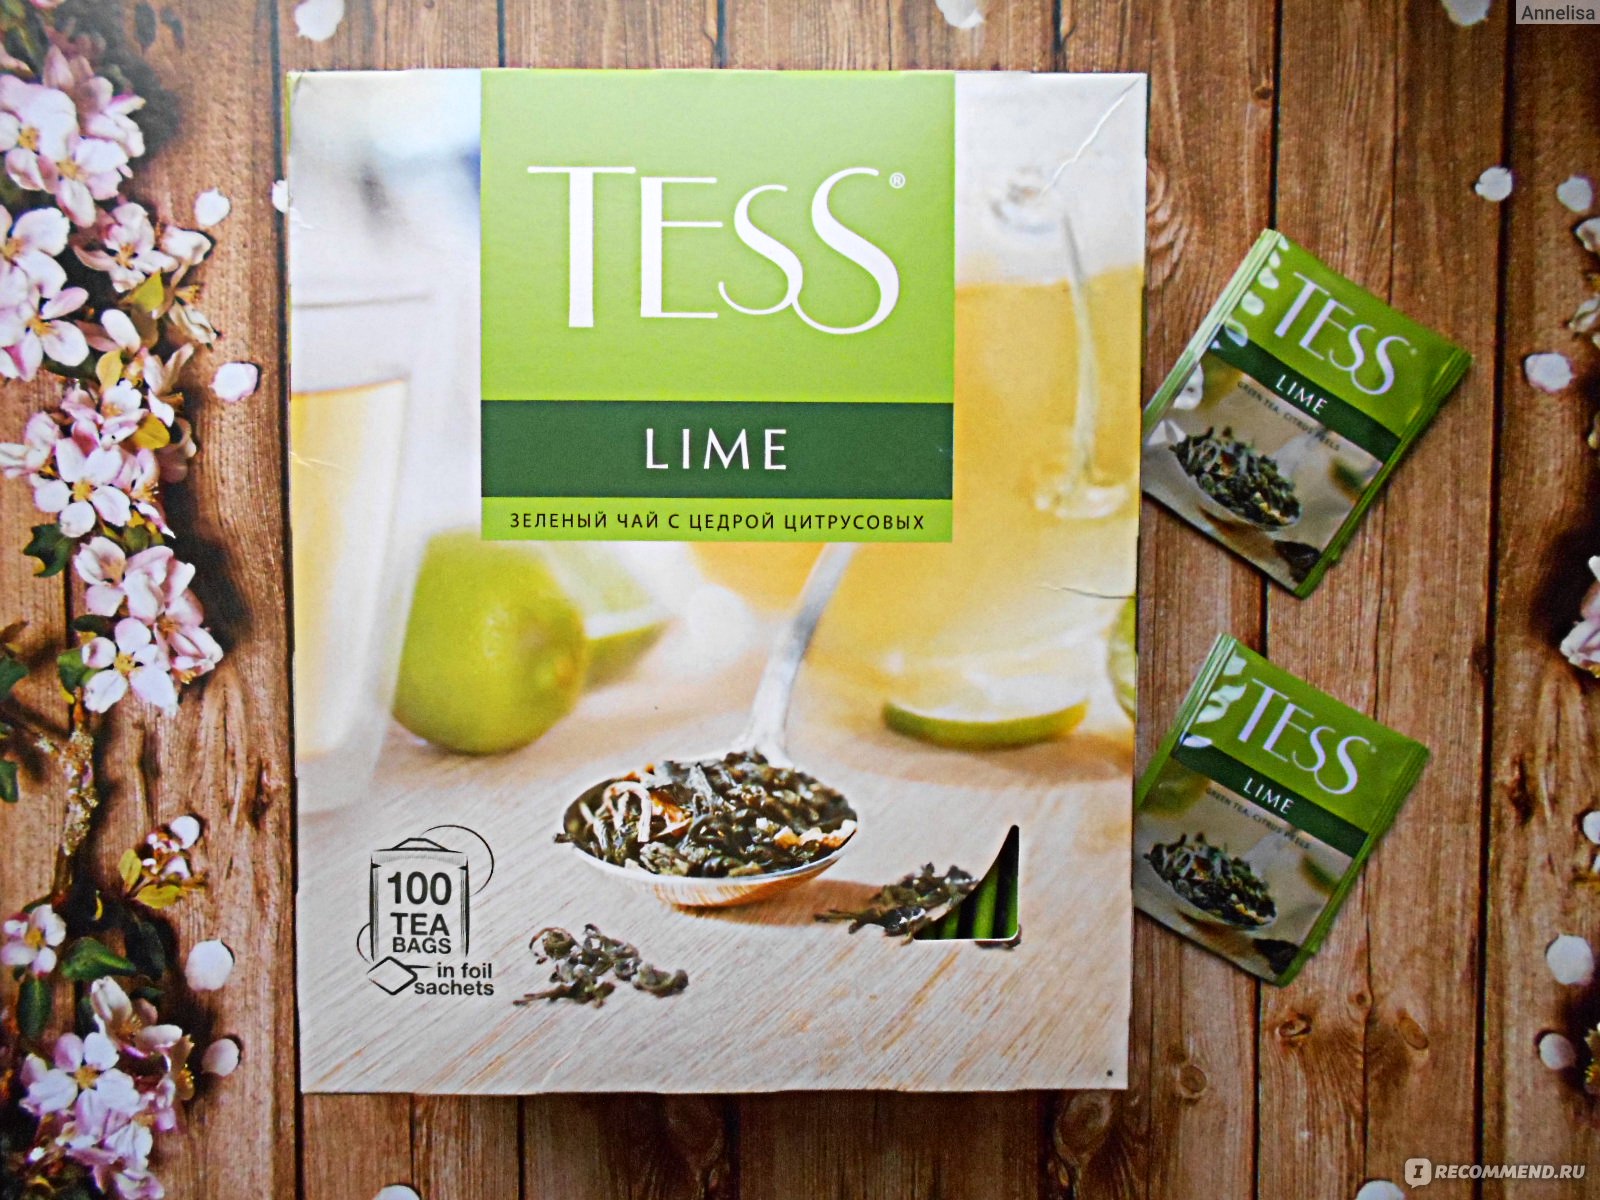 Зеленый чай с лаймом. Чай Тесс зеленый с лаймом. Чай зеленый Tess Lime. Тесс зелёный лайм пакетики. Tess чай зеленый в пакетиках Lime, 100.